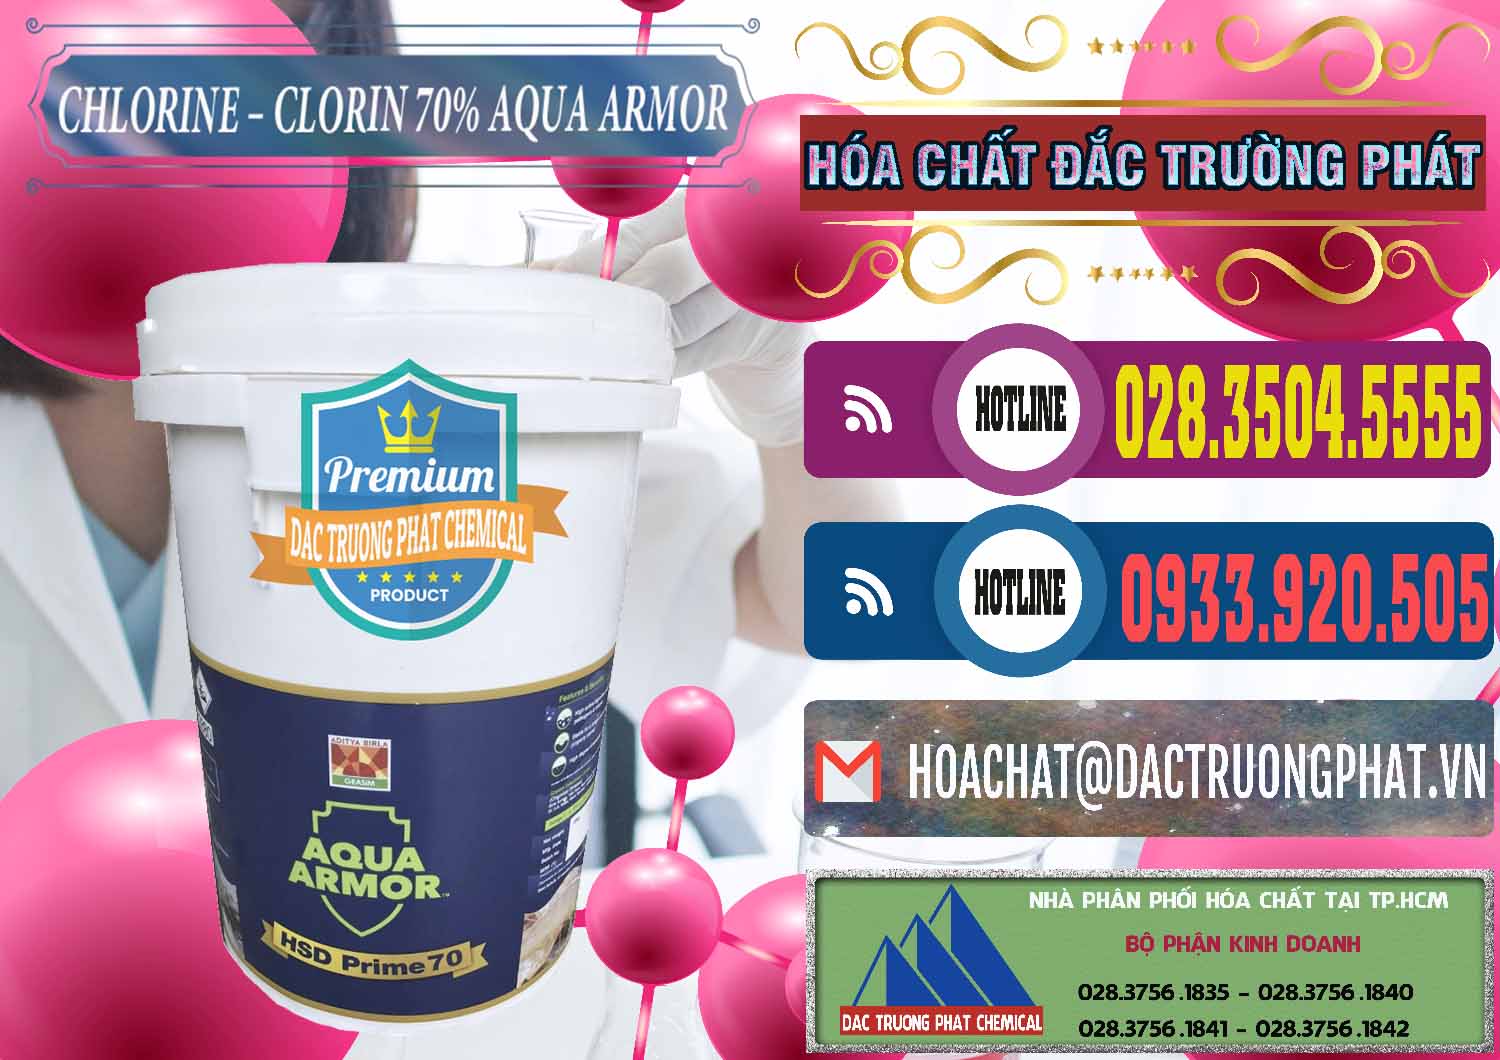 Công ty phân phối và bán Chlorine – Clorin 70% Aqua Armor Aditya Birla Grasim Ấn Độ India - 0241 - Cty chuyên nhập khẩu - phân phối hóa chất tại TP.HCM - muabanhoachat.com.vn